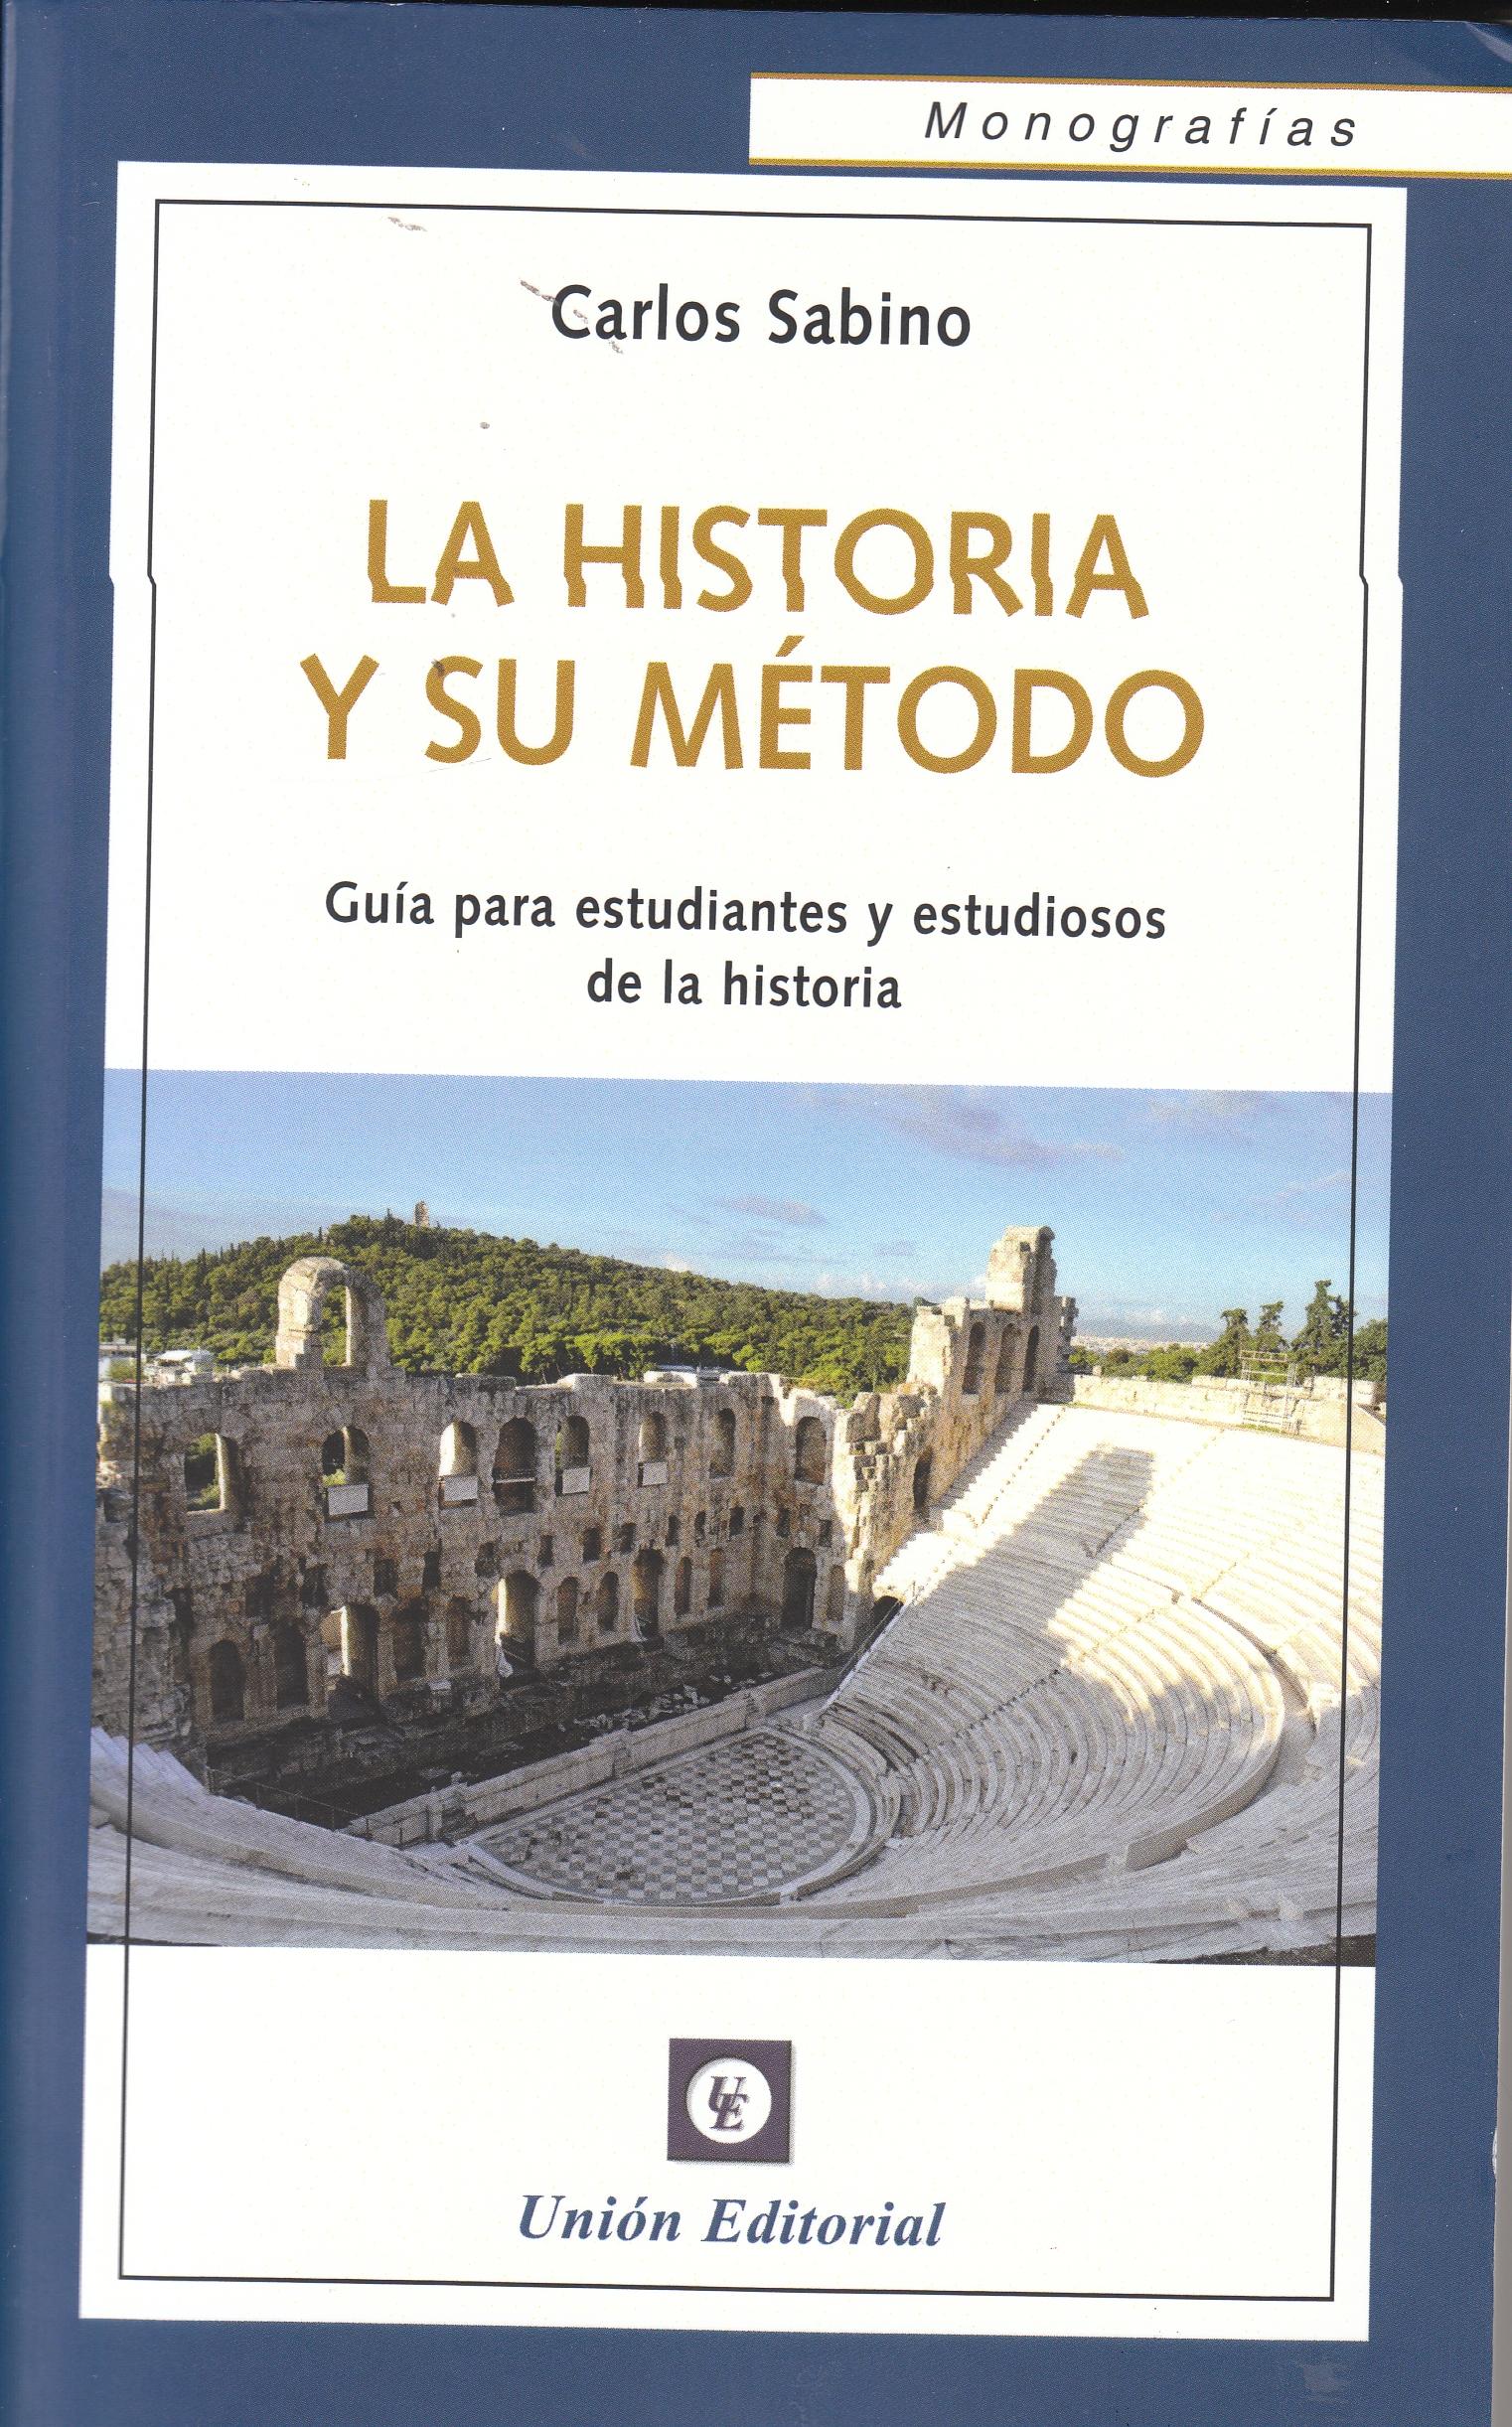 La historia y su método "Guía para estudiantes y estudiosos de la historia"